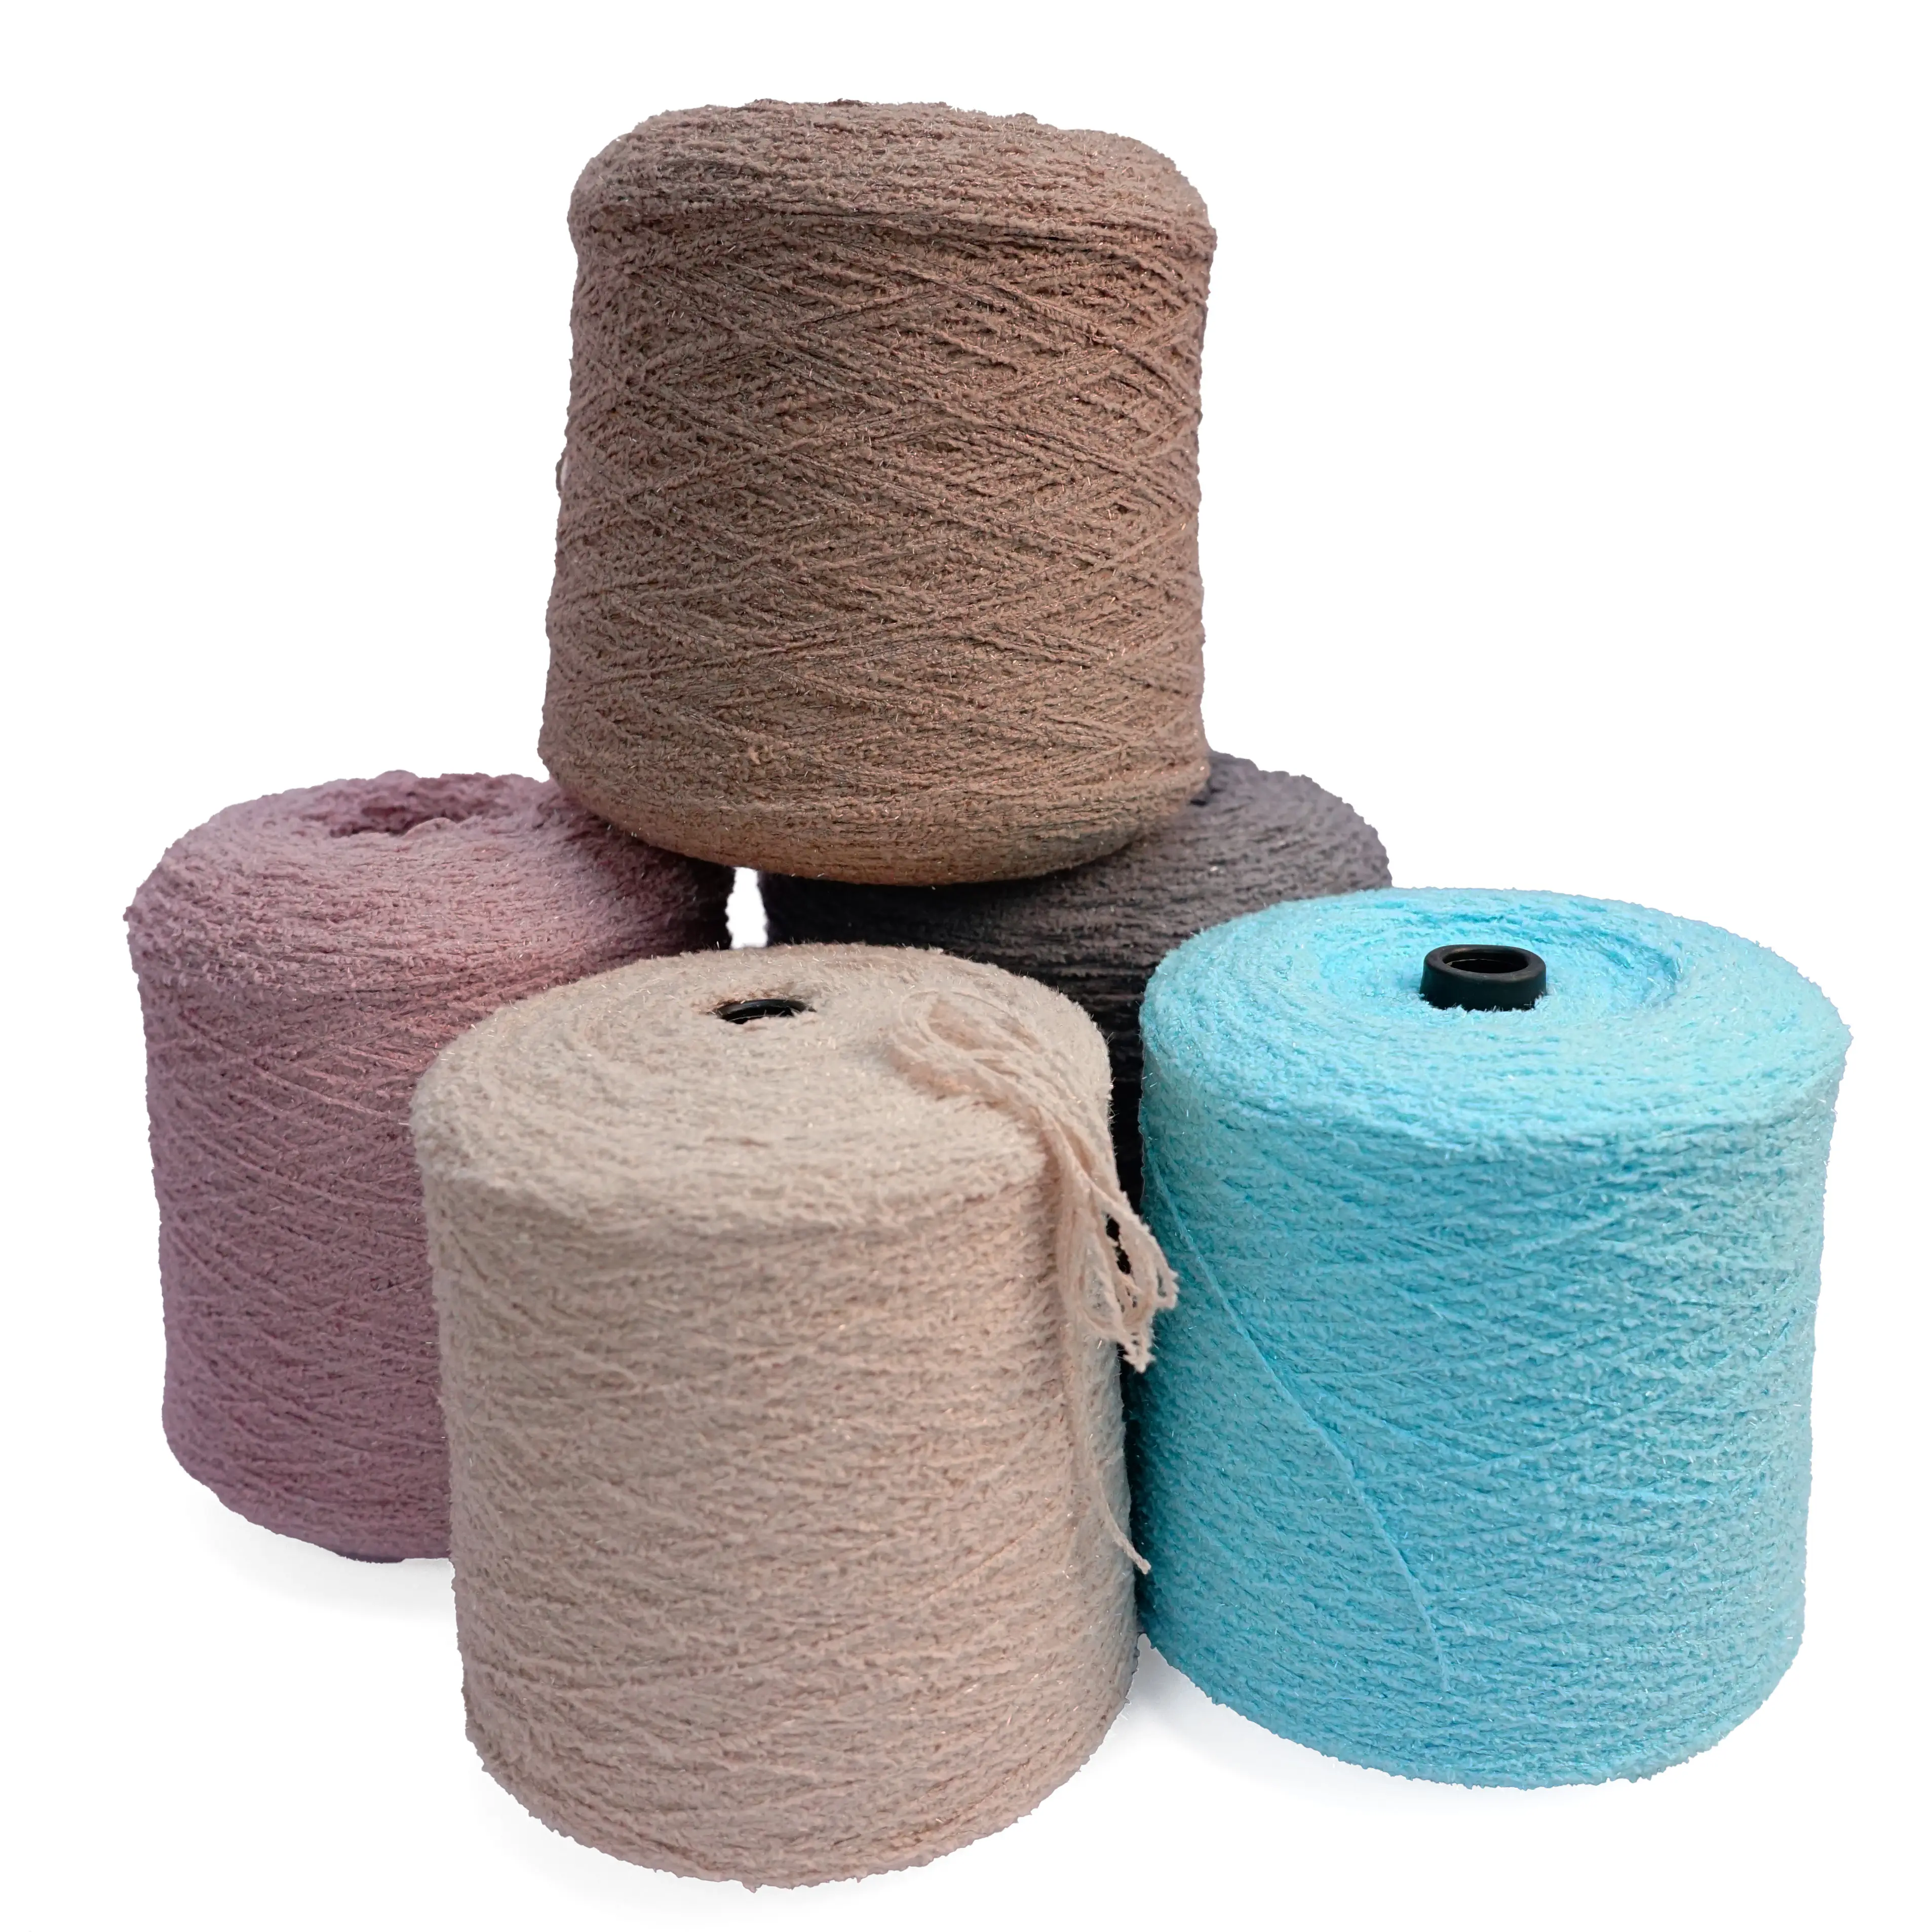 編み糸ソフトベルベットフリースかぎ針編み糸ビーズ糸100% ポリエステル手編みパーカー用グリッターヤーン